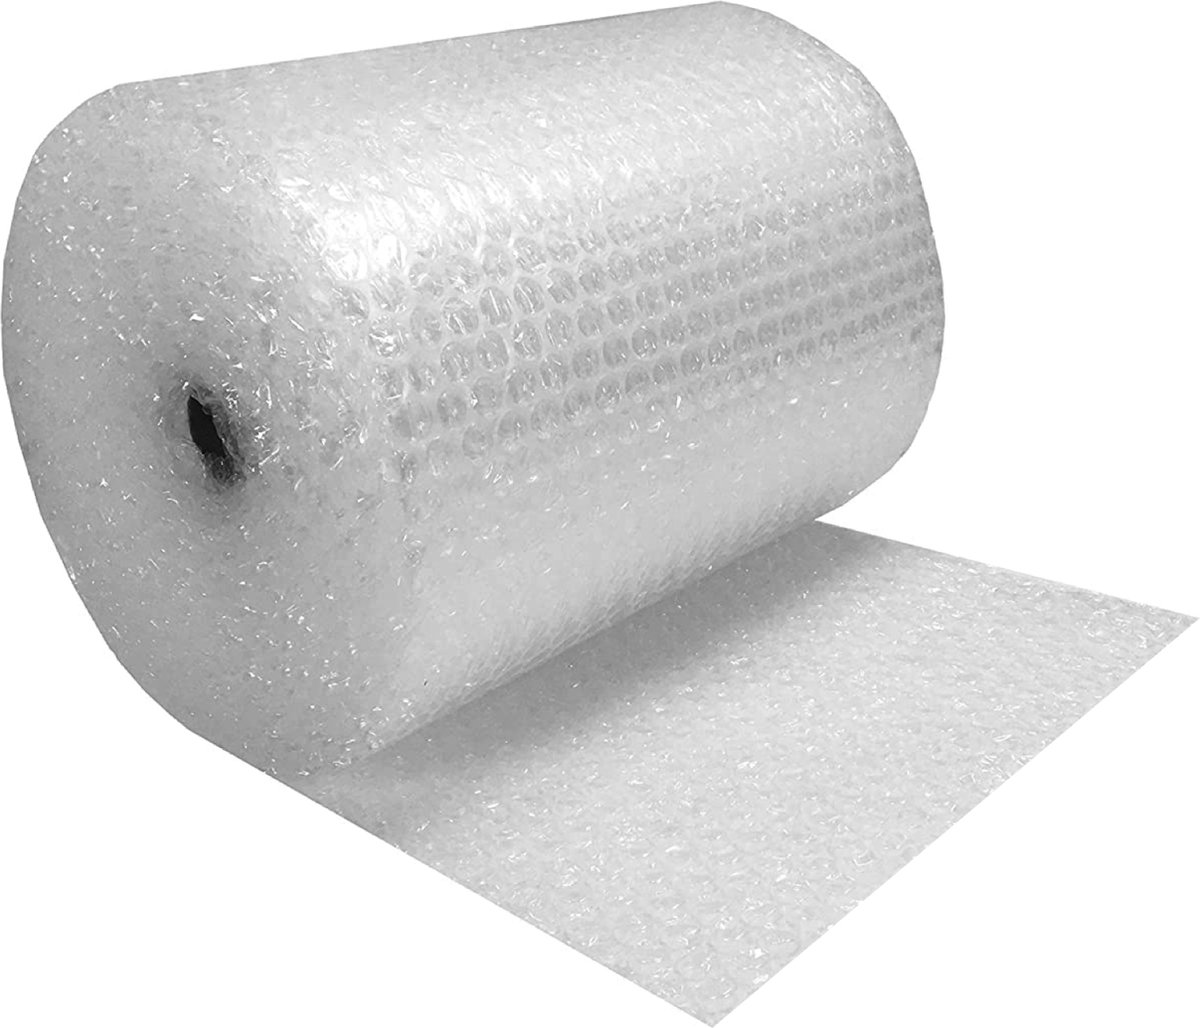 Premium Noppenfolie XL - 50cm x 100m - Bubble Wrap Rol - Bubbeltjes plastic - Extra sterk - Bescherm uw spullen - Voor inpakken en verhuizen - Bubbeltjesplastic - Verhuisservice+